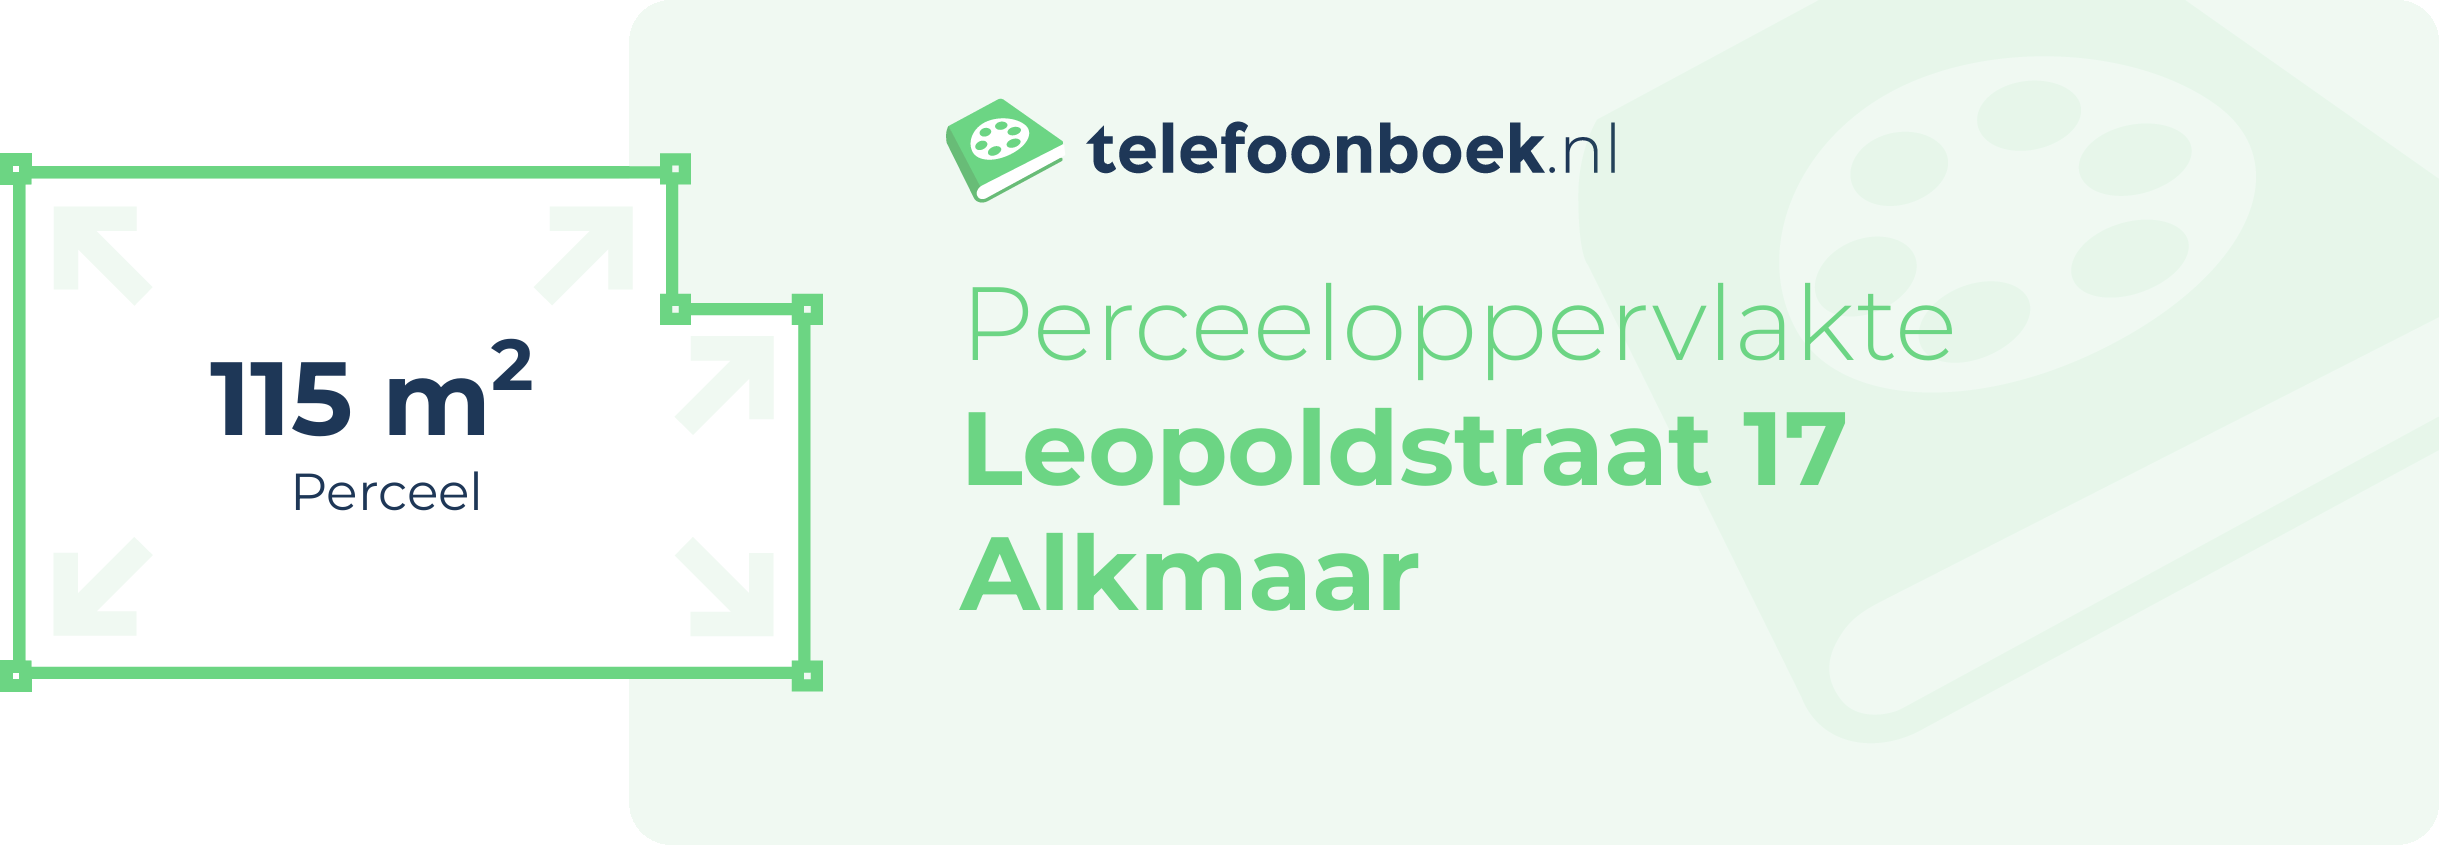 Perceeloppervlakte Leopoldstraat 17 Alkmaar